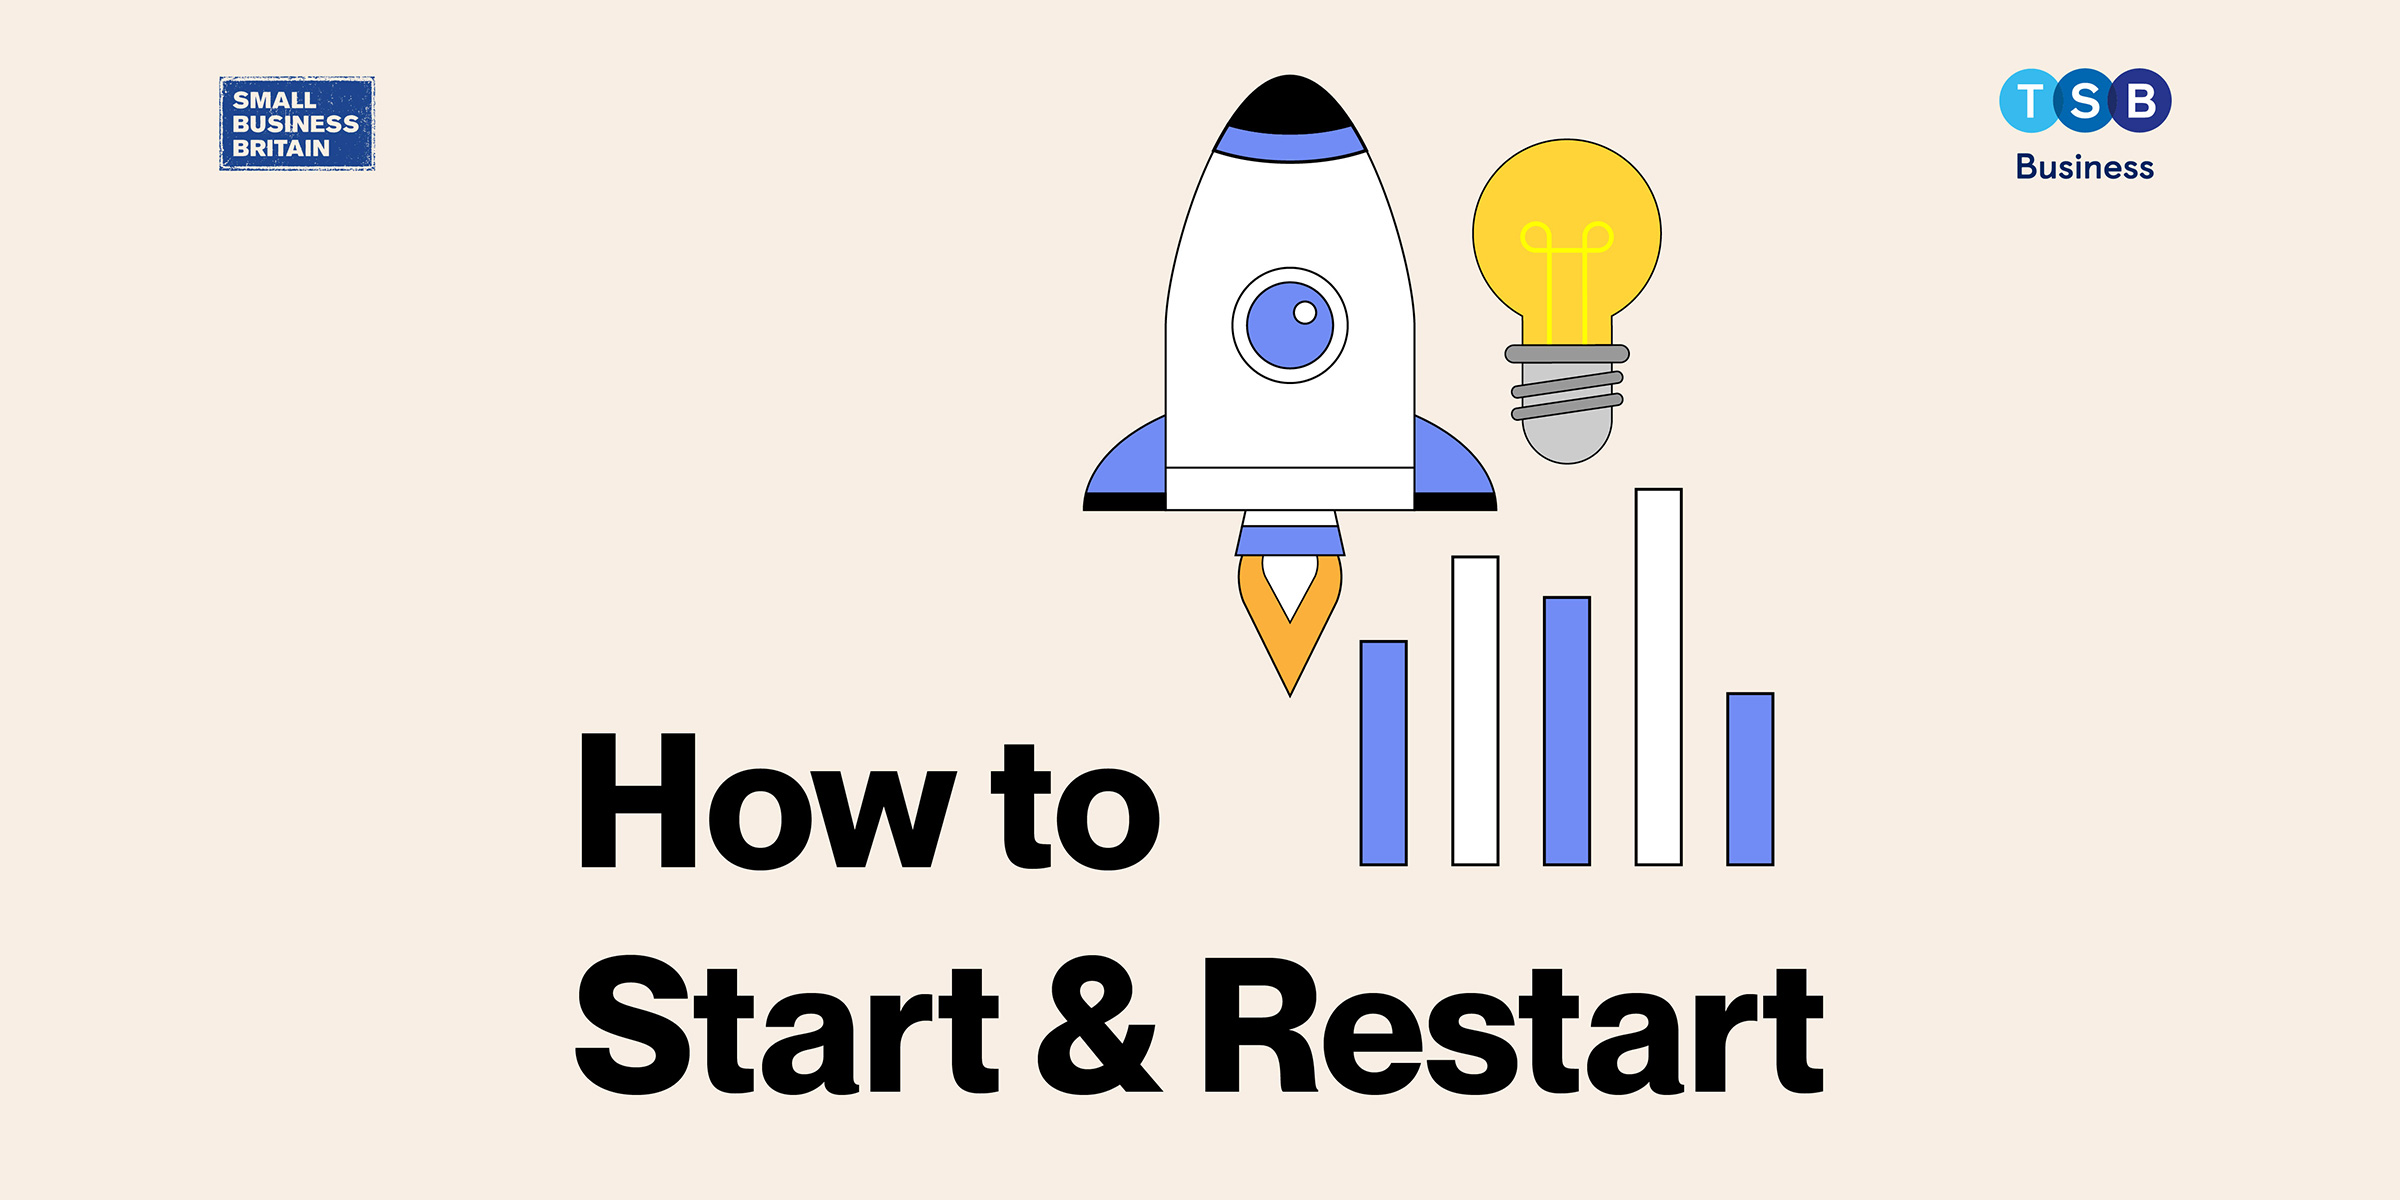 How To Start & Restart